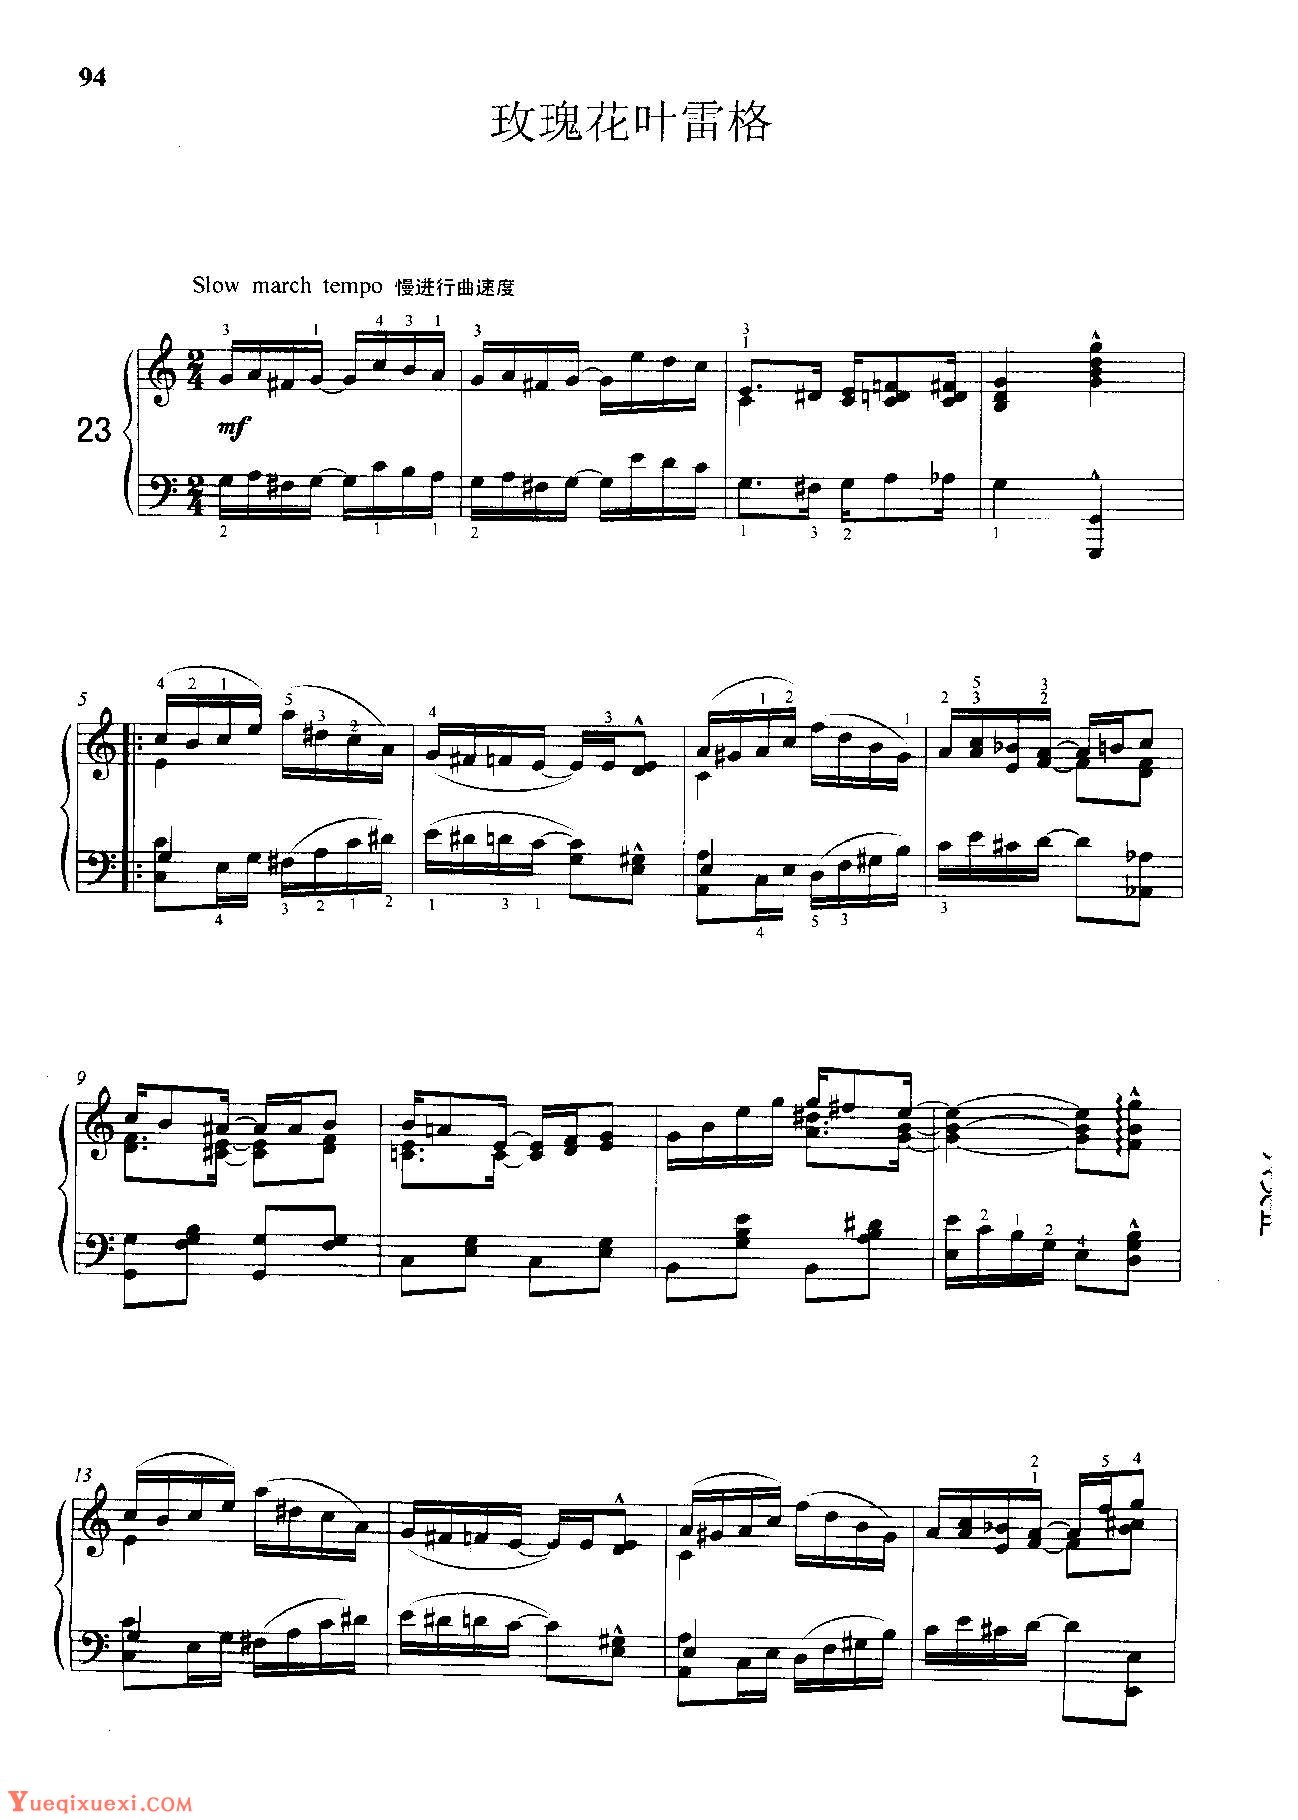 雷格泰姆钢琴乐谱《剑兰雷格》雷格泰姆之王斯科特·乔普林